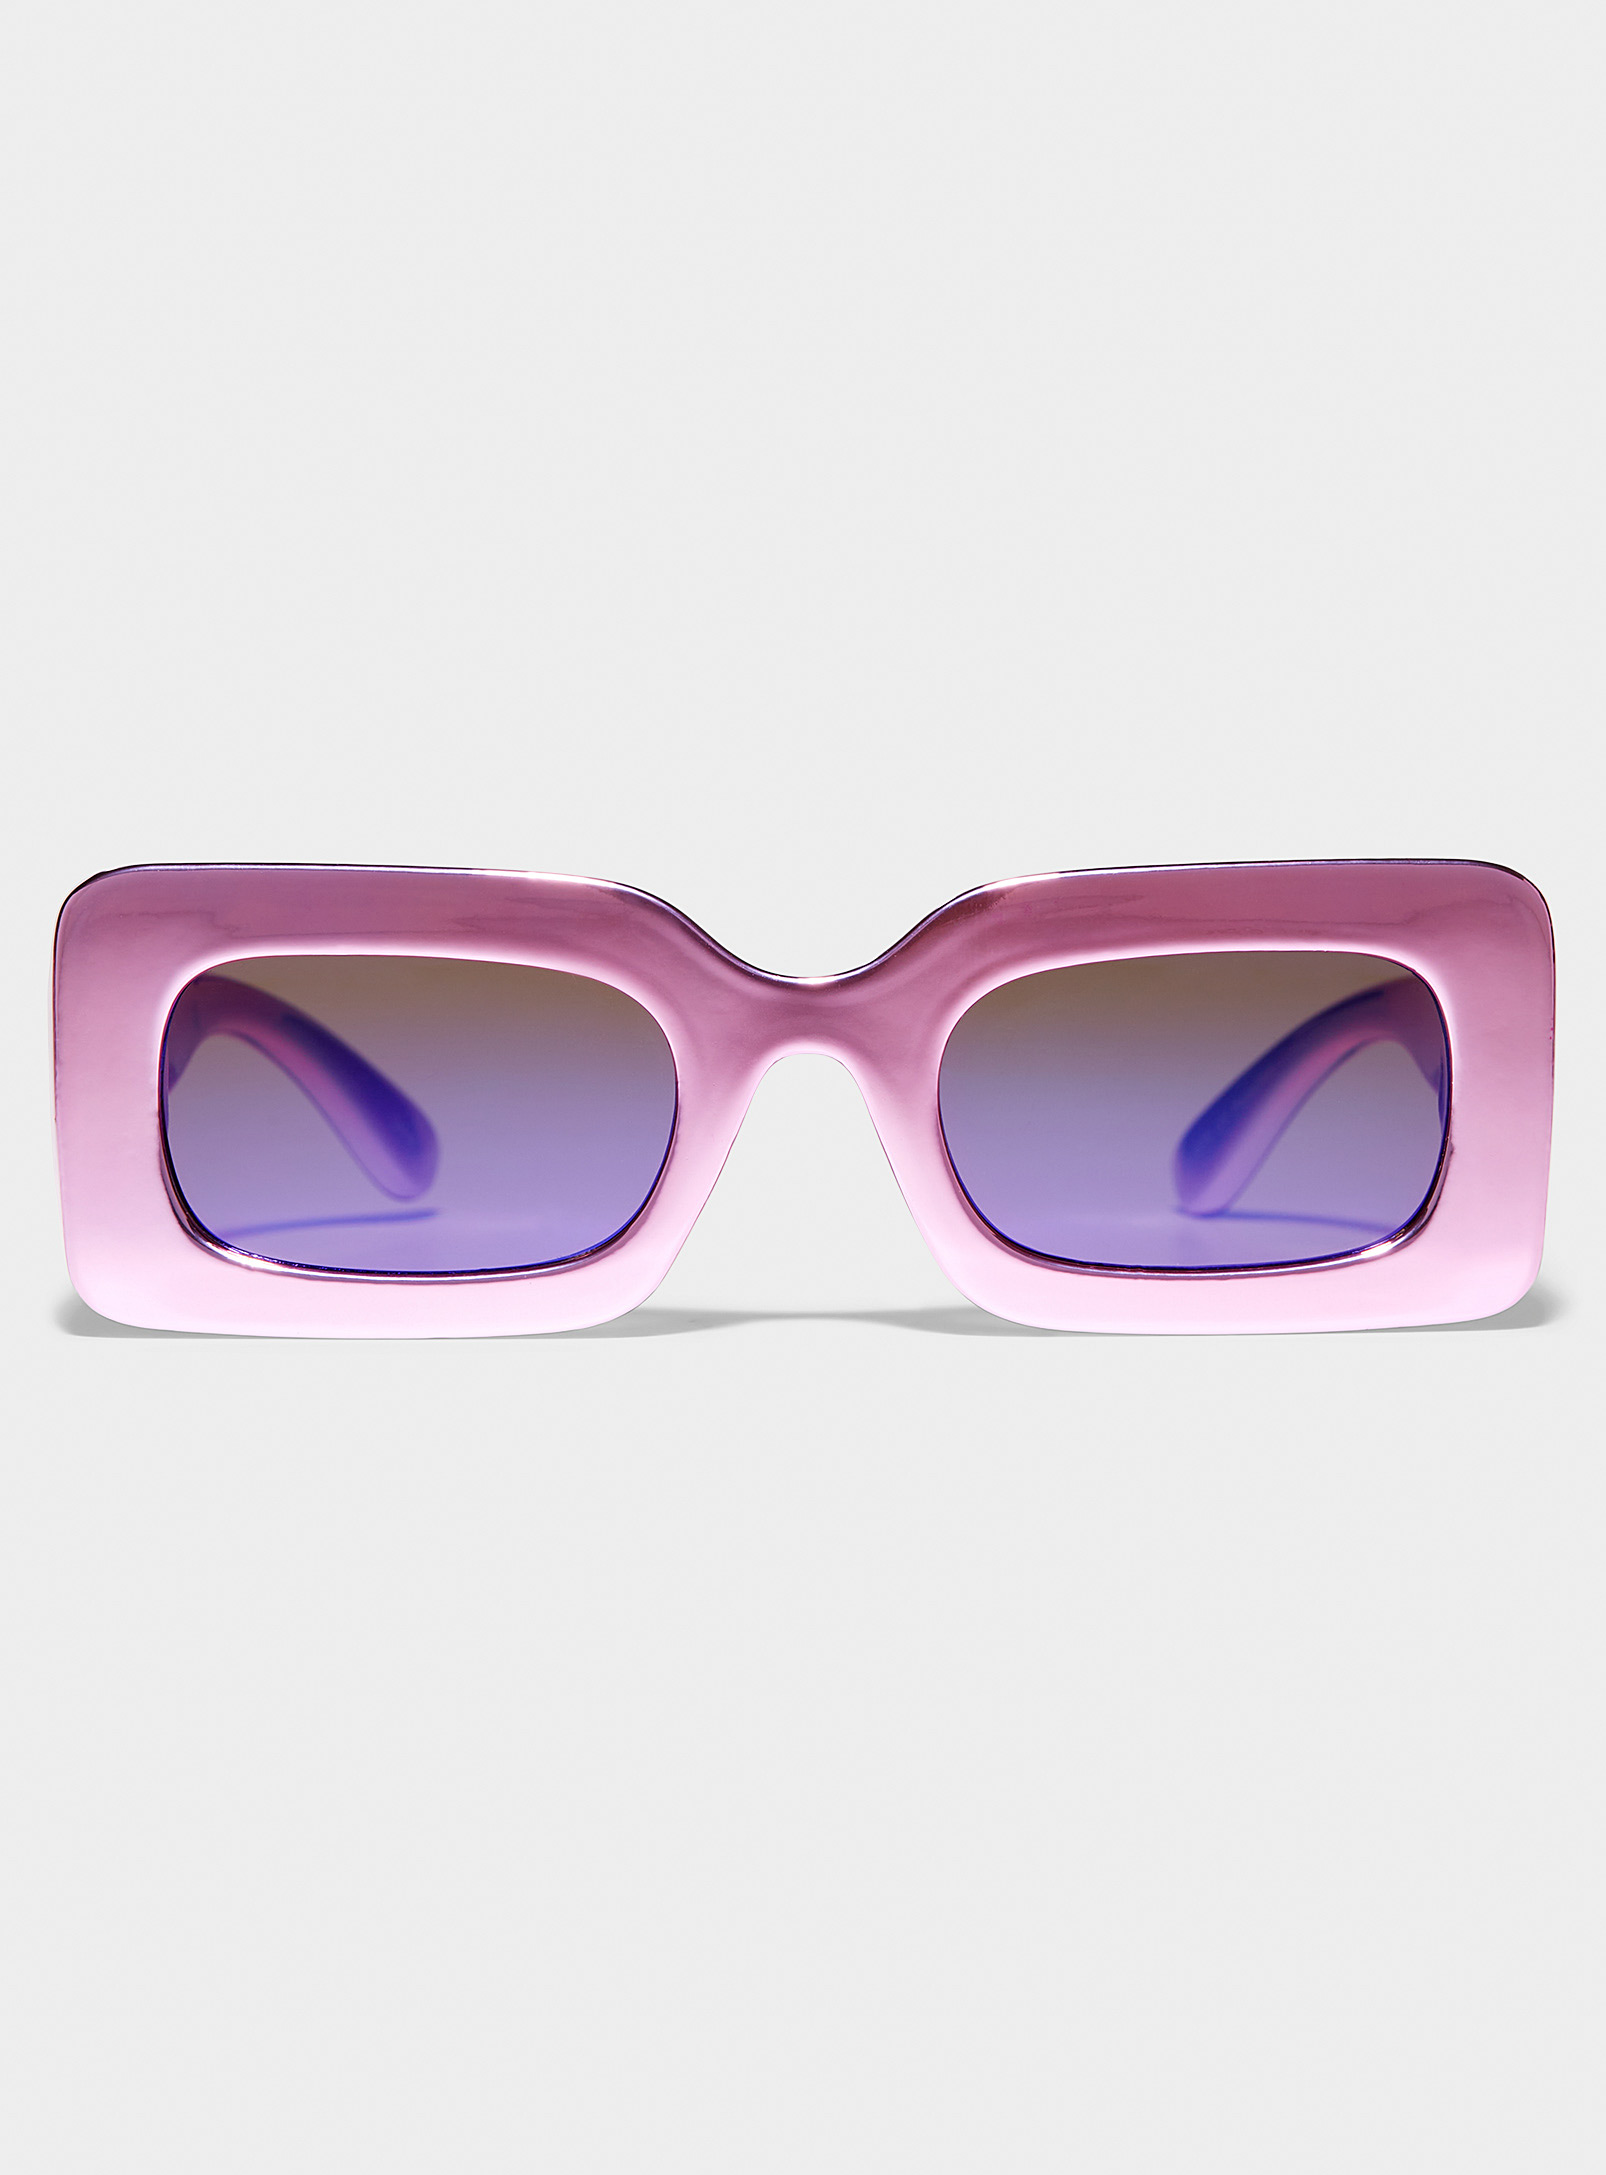 Simons - Les lunettes de soleil rectangulaires rose métallique